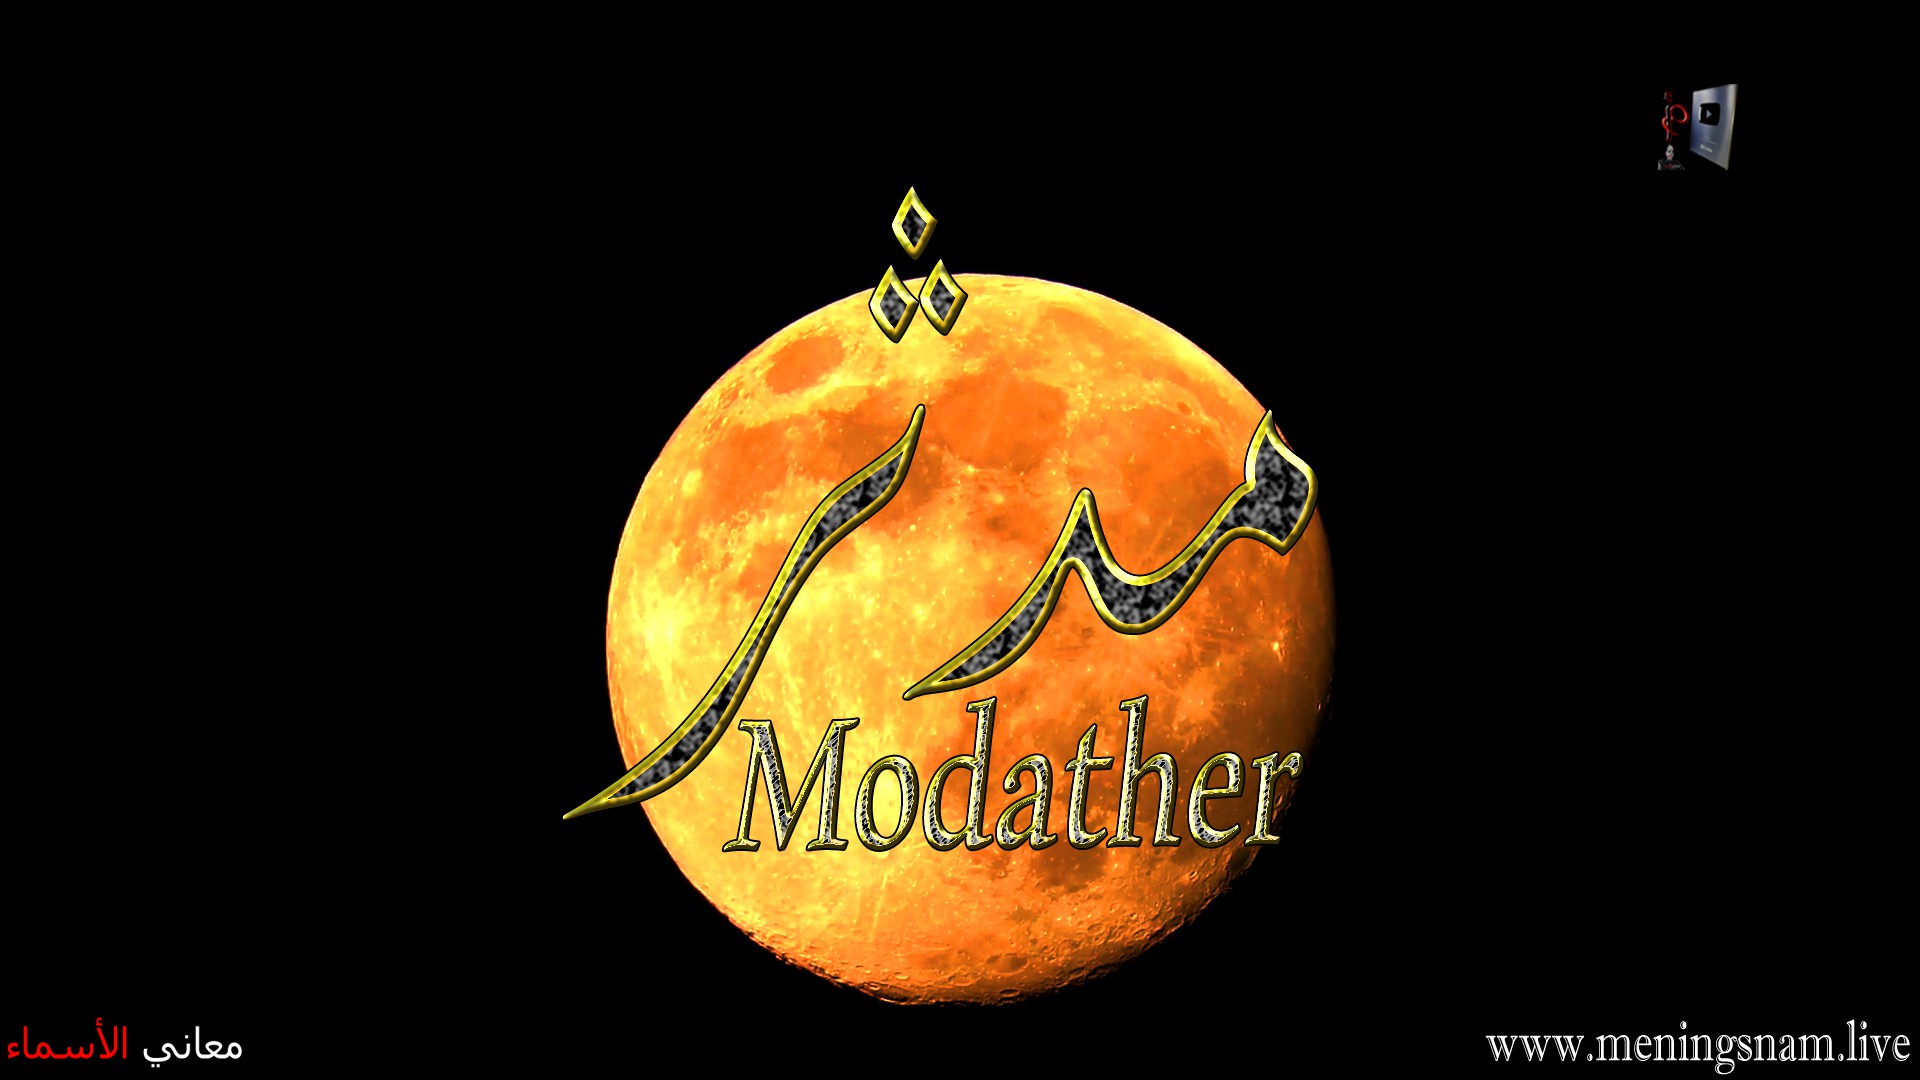 معنى اسم, مدثر, وصفات حامل, هذا الاسم, Modather,